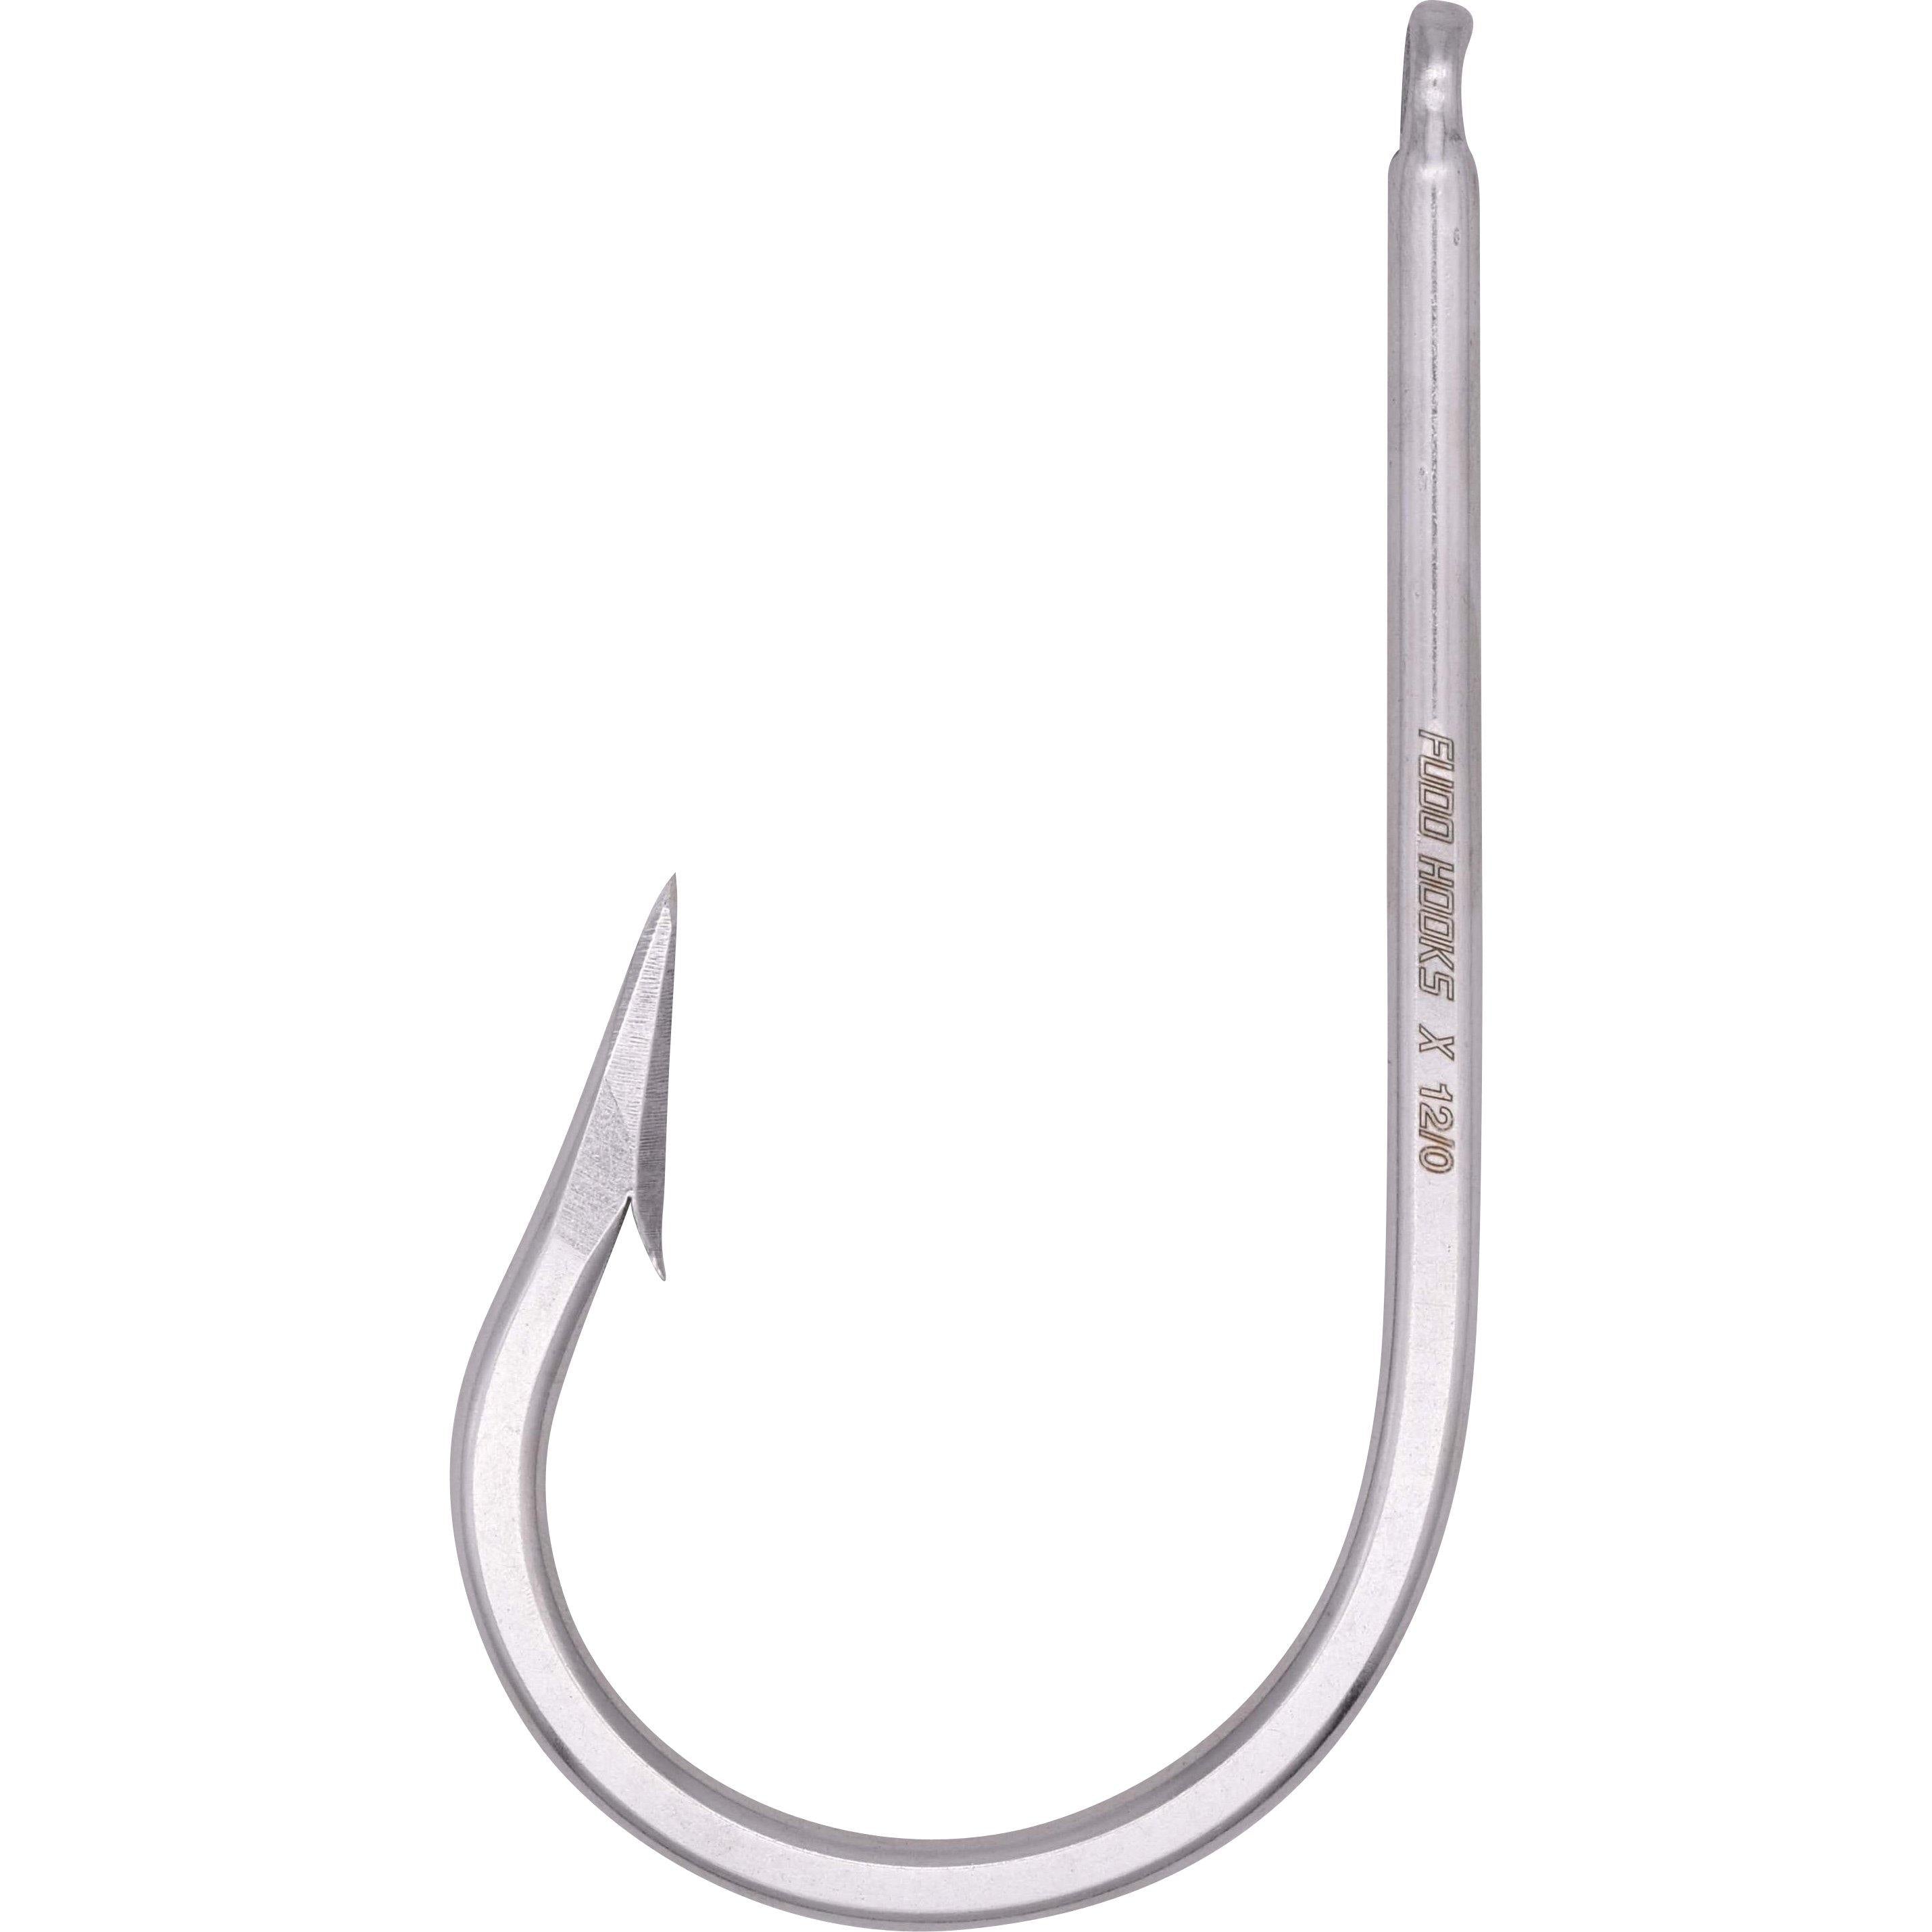 FUDO Southern Tuna Ringed Eye Hooks - 2 Pack - Size 7/0